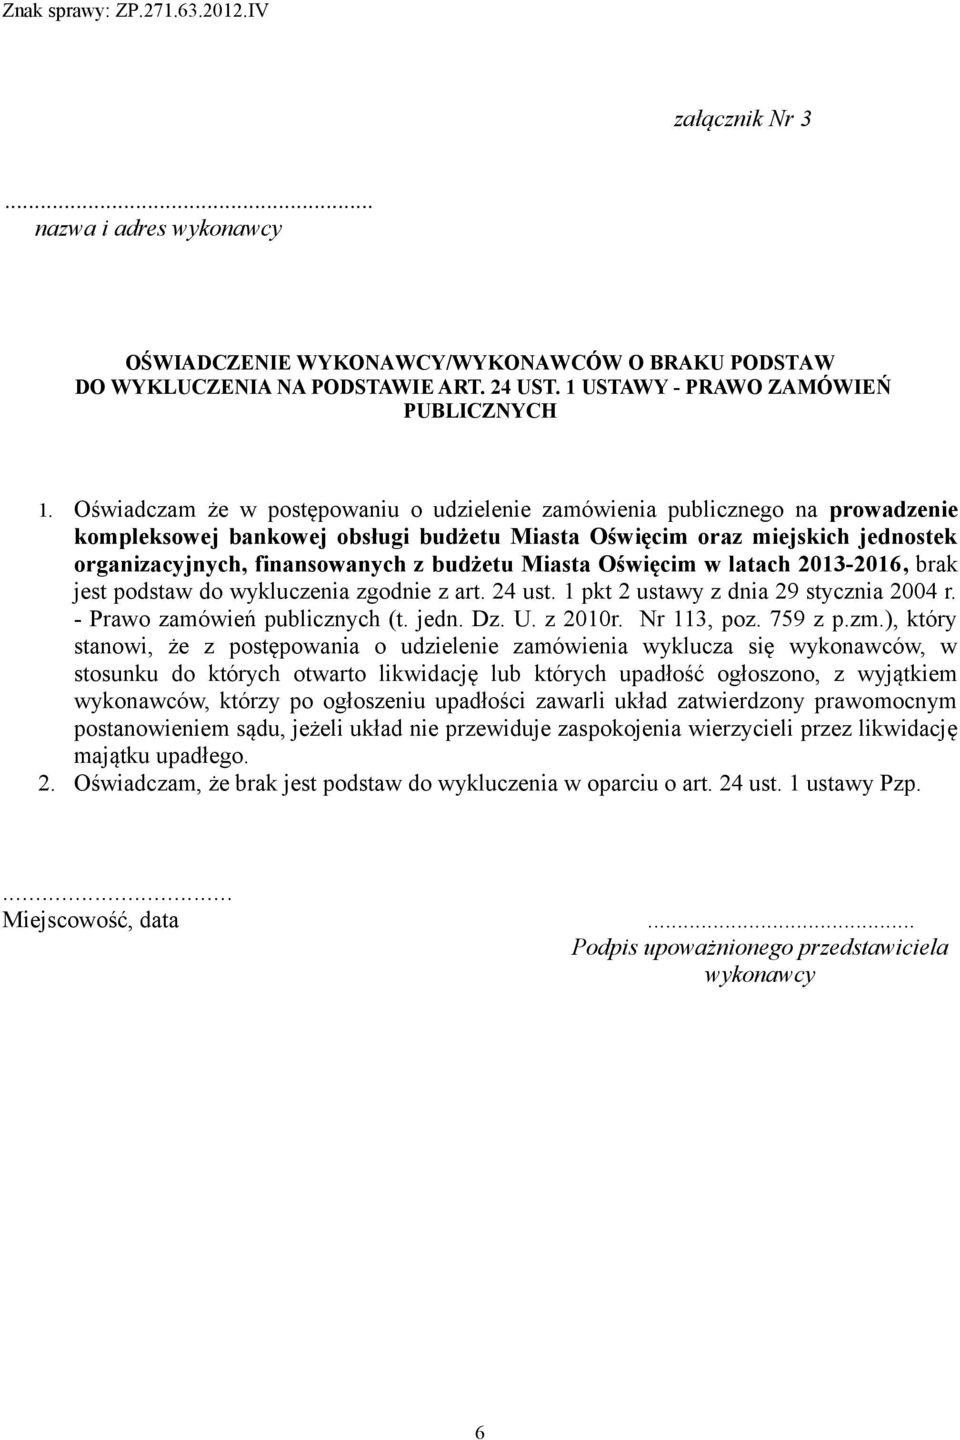 Miasta Oświęcim w latach 2013-2016, brak jest podstaw do wykluczenia zgodnie z art. 24 ust. 1 pkt 2 ustawy z dnia 29 stycznia 2004 r. - Prawo zamówień publicznych (t. jedn. Dz. U. z 2010r.